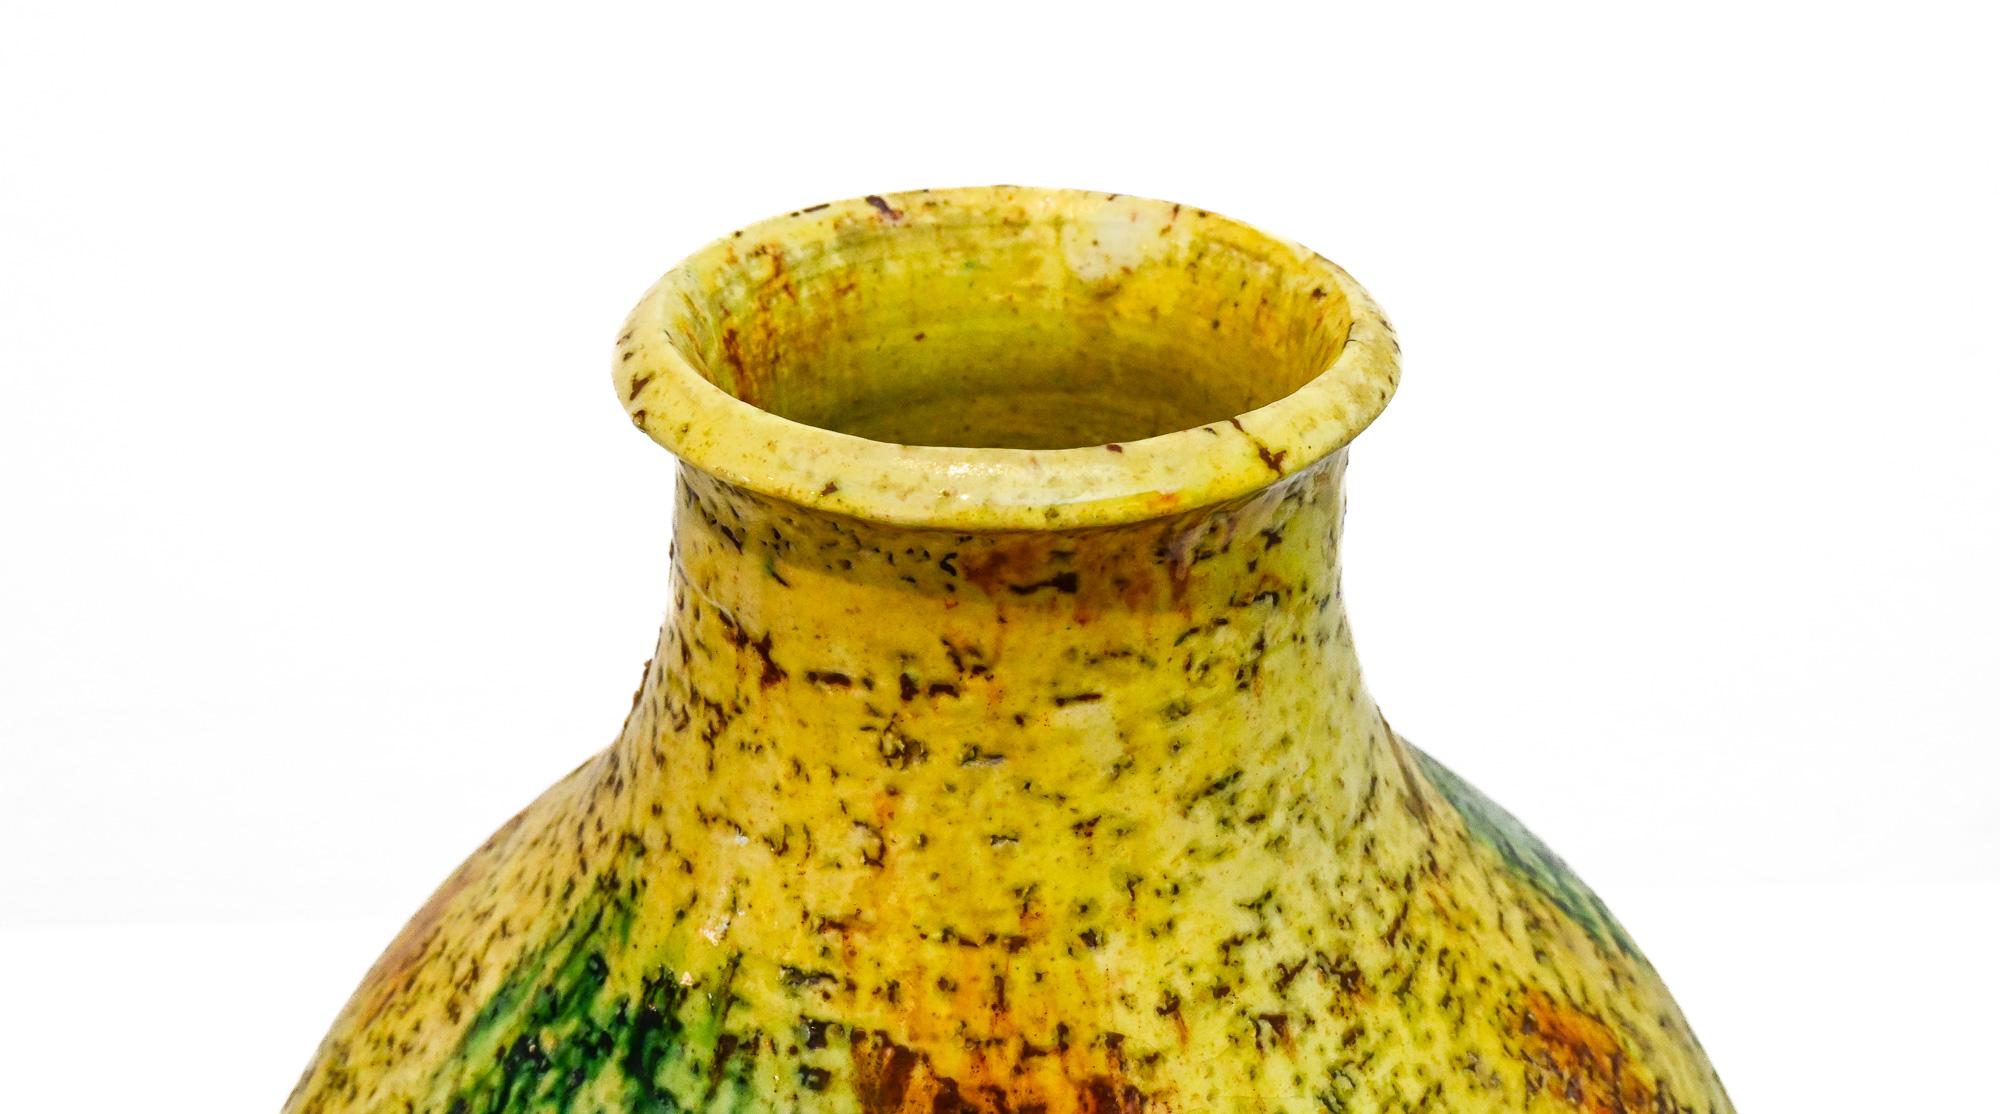 Grand vase rond jaune de Marcello Fantoni (1915-2011) - Florence, Italie Signé à la base Fantoni, daté 1972.
Directional : provient directement de la famille Fantoni.

